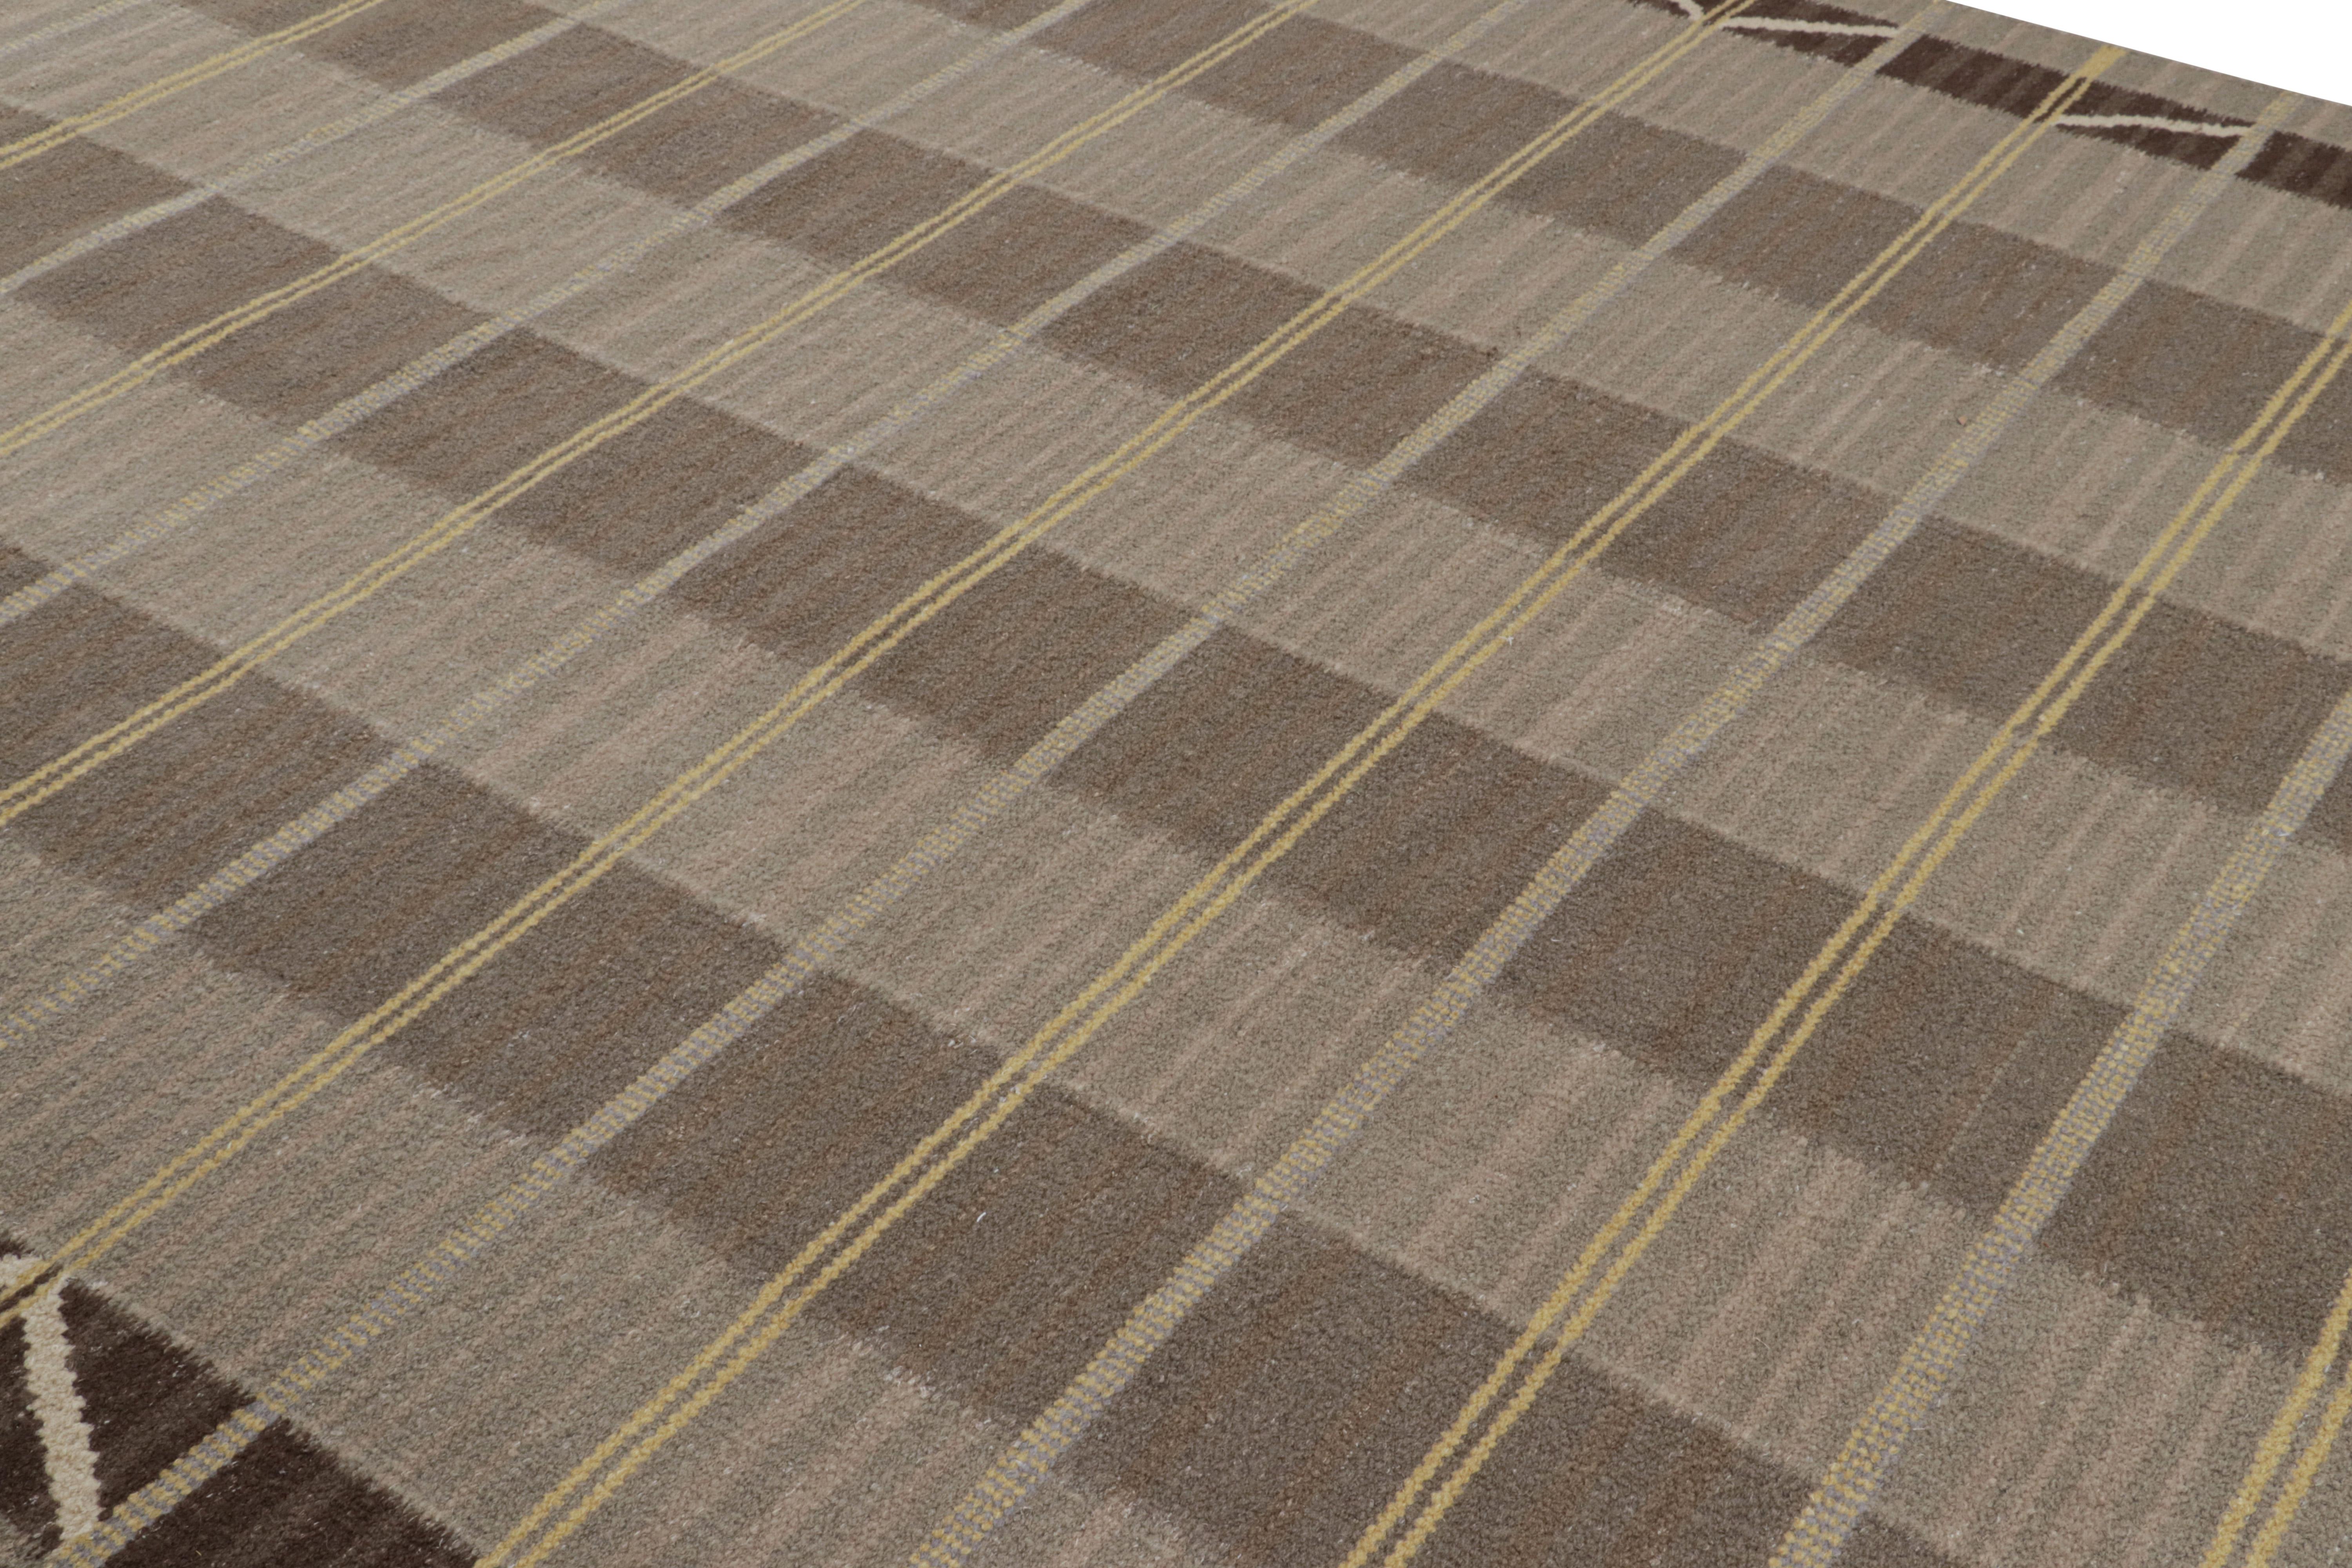 Dieser schwedische Teppich im Format 9x12 ist eine kühne Neuheit in der skandinavischen Kollektion von Rug & Kilim. Das Design ist von schwedischem Minimalismus inspiriert und wird aus einer Mischung aus Wolle und exotischen Garnen handgewebt.

Über